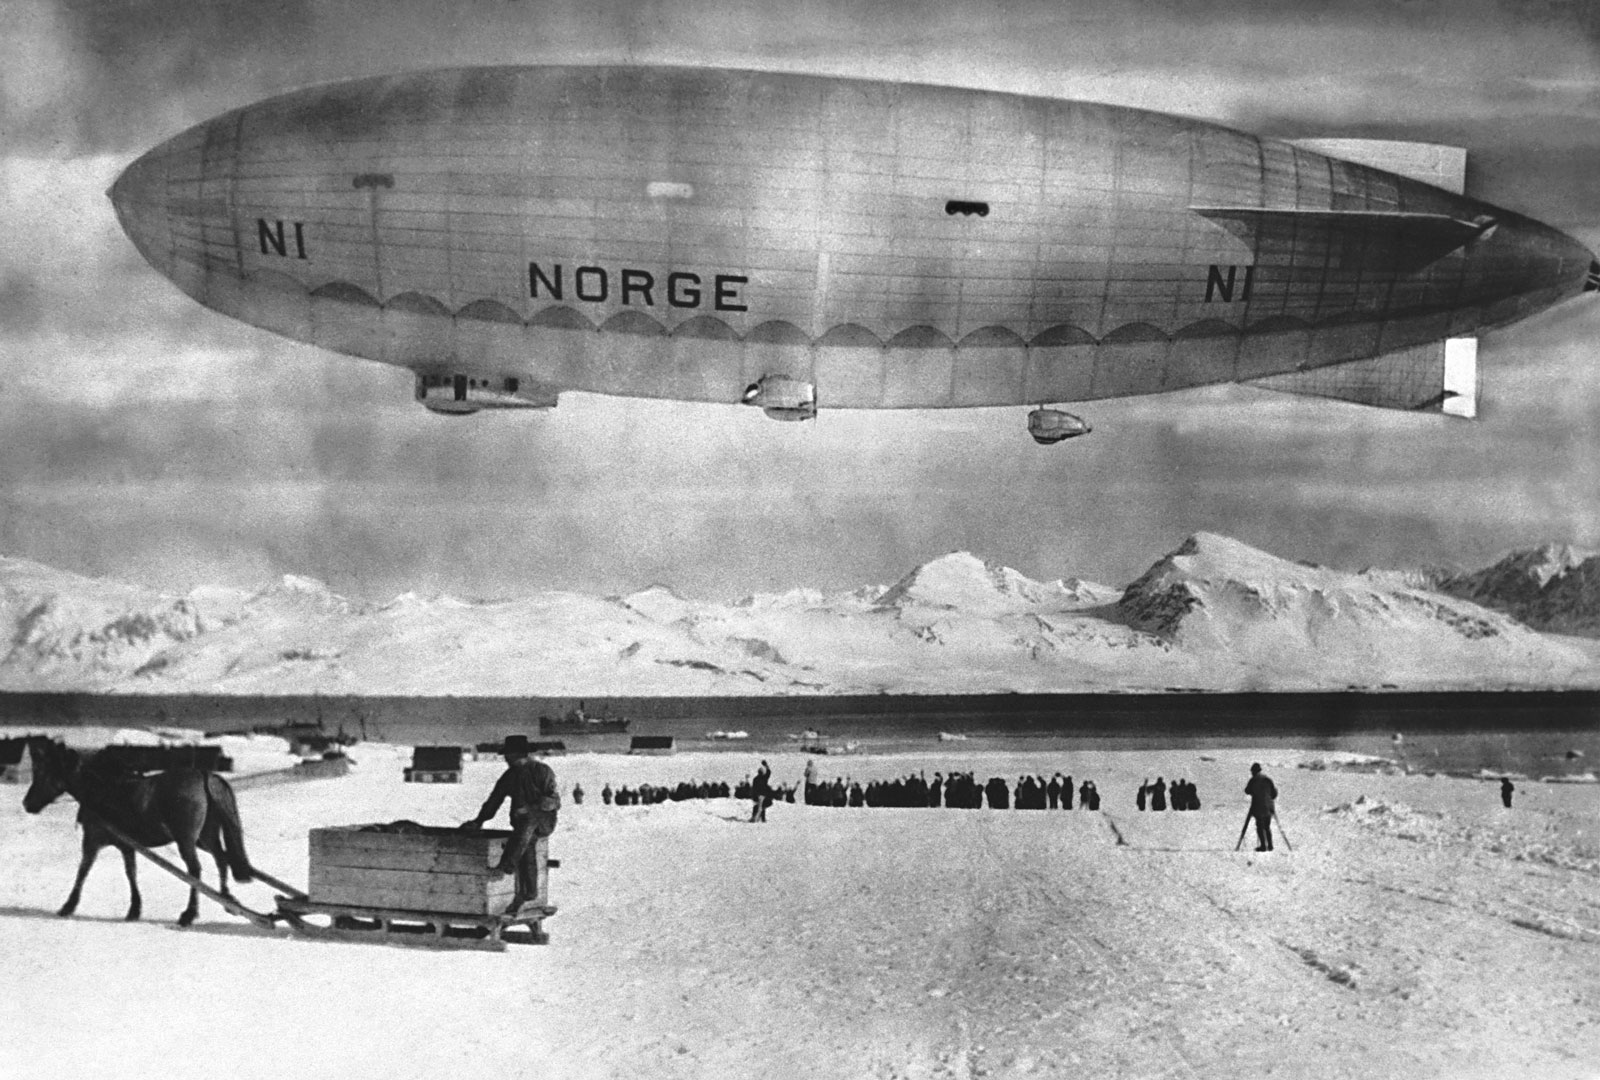 La Conquista del Polo Nord: Roald Amundsen e Umberto Nobile